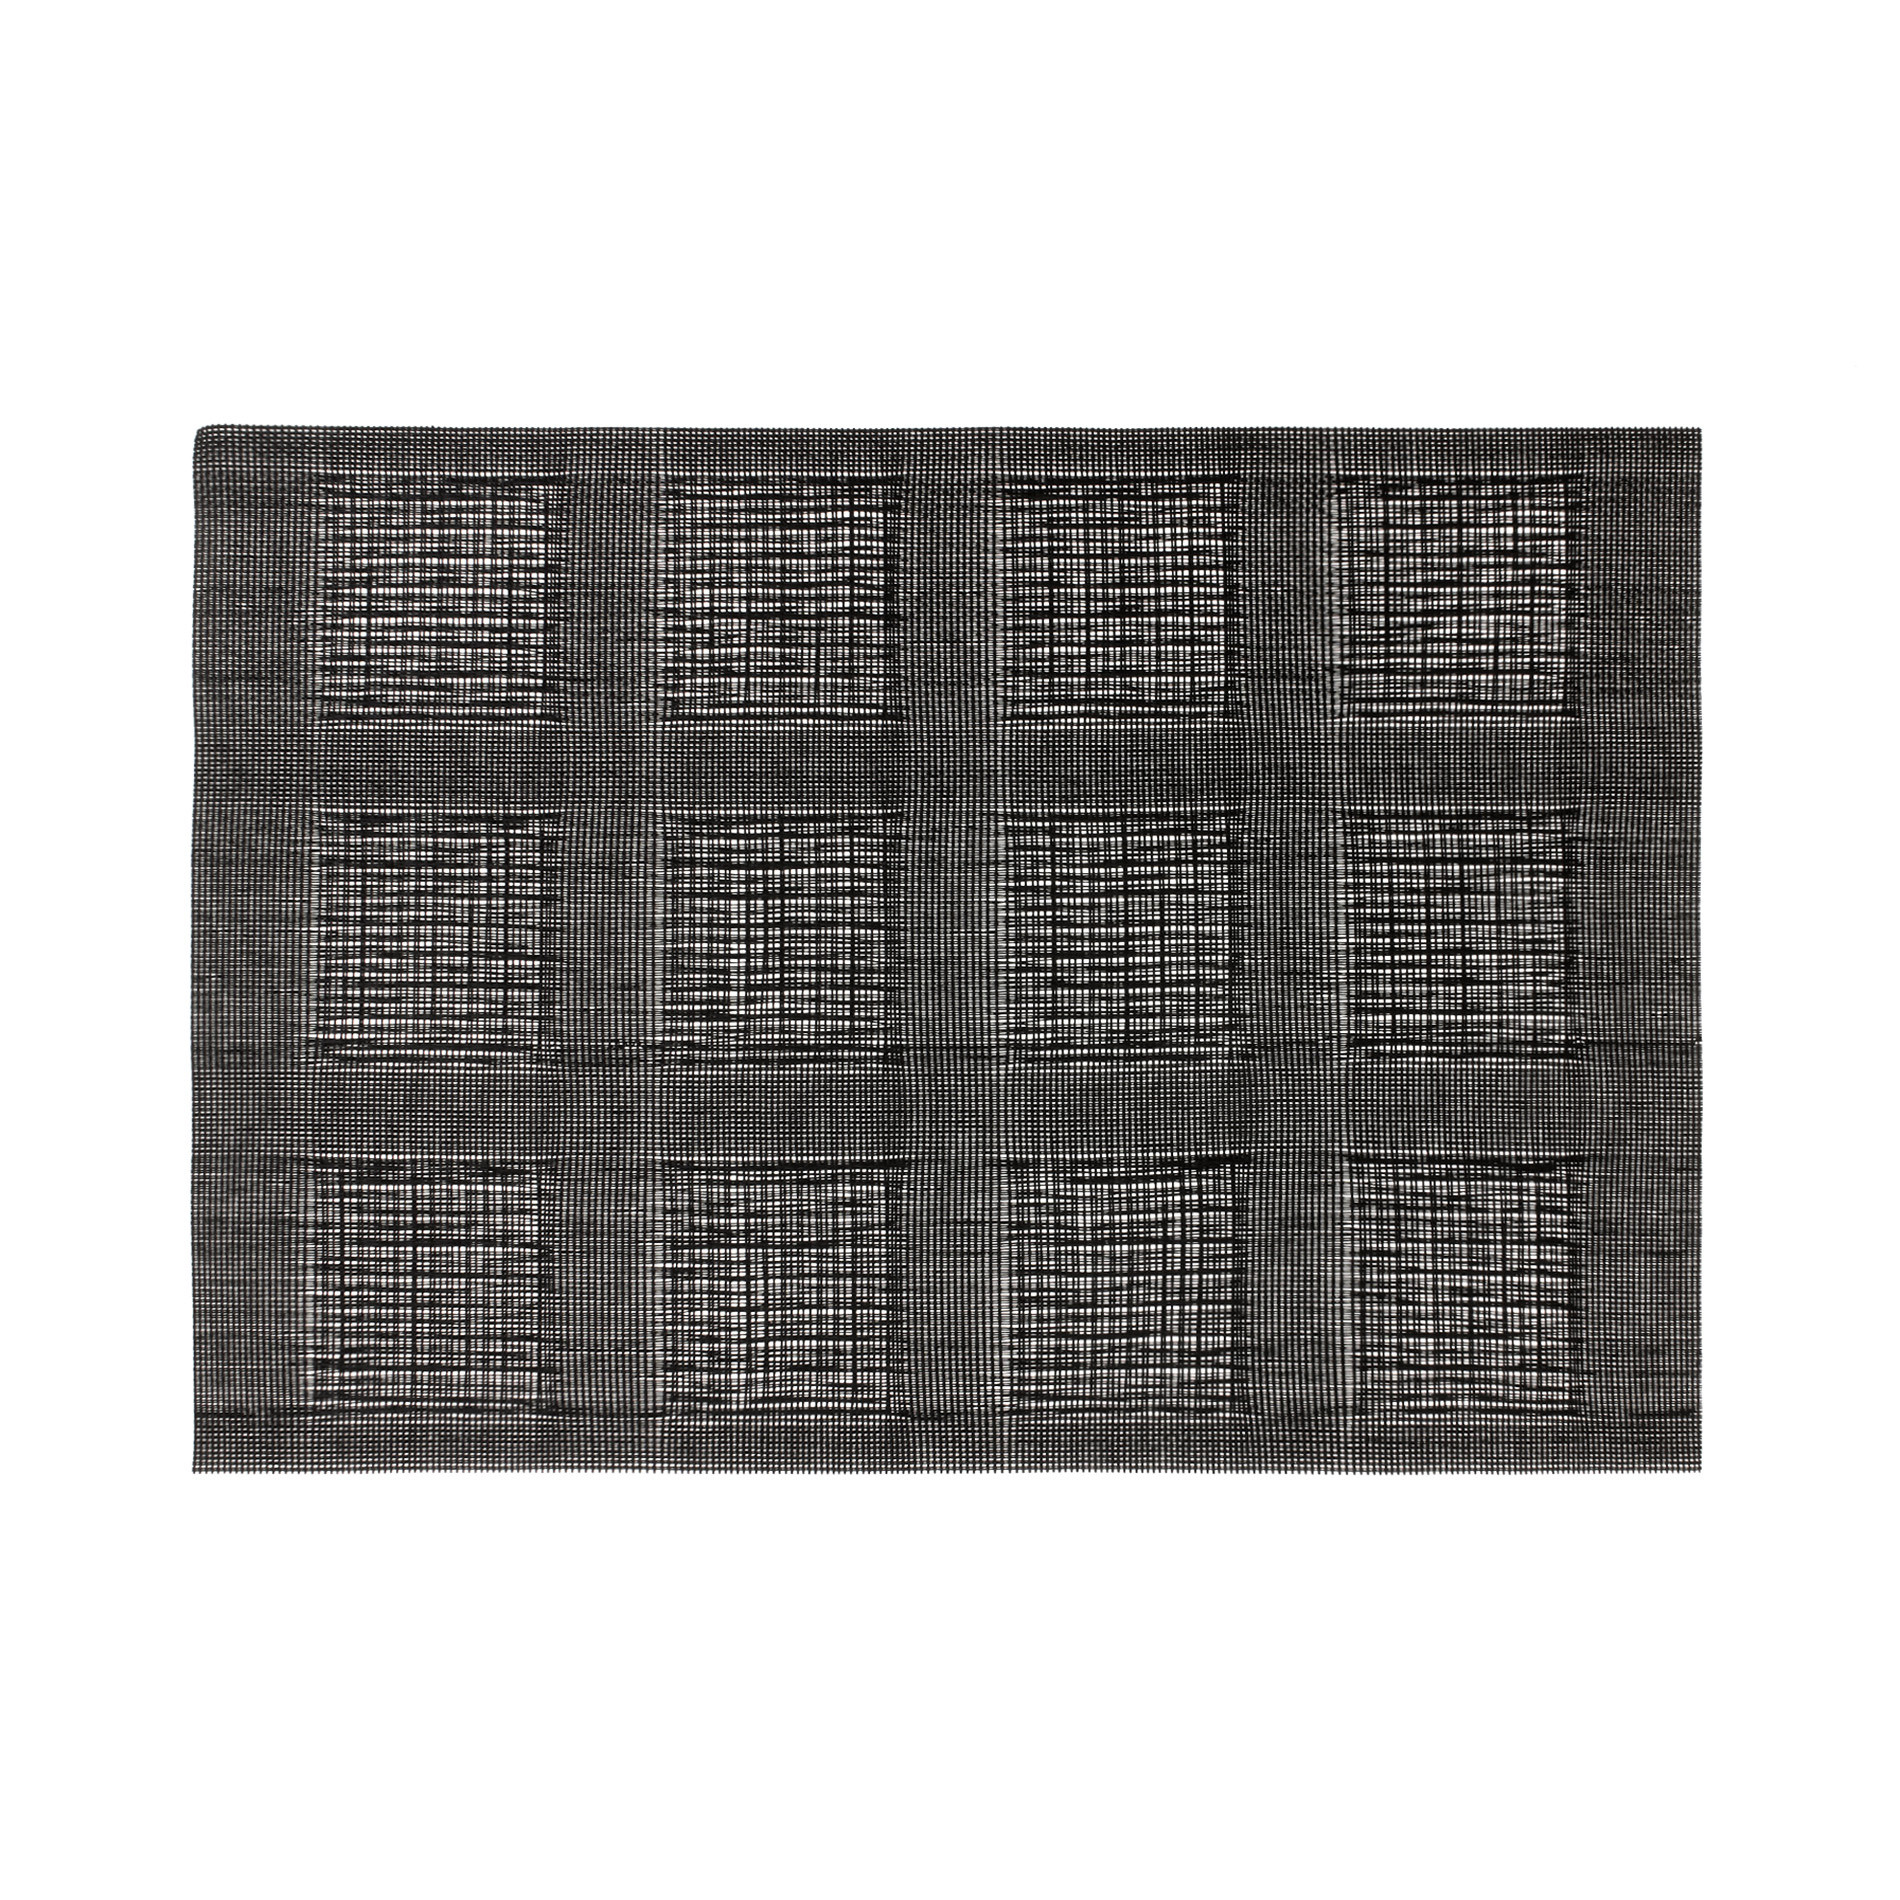 Подставка для столовых приборов из ПВХ в клетку Coincasa, темно-серый